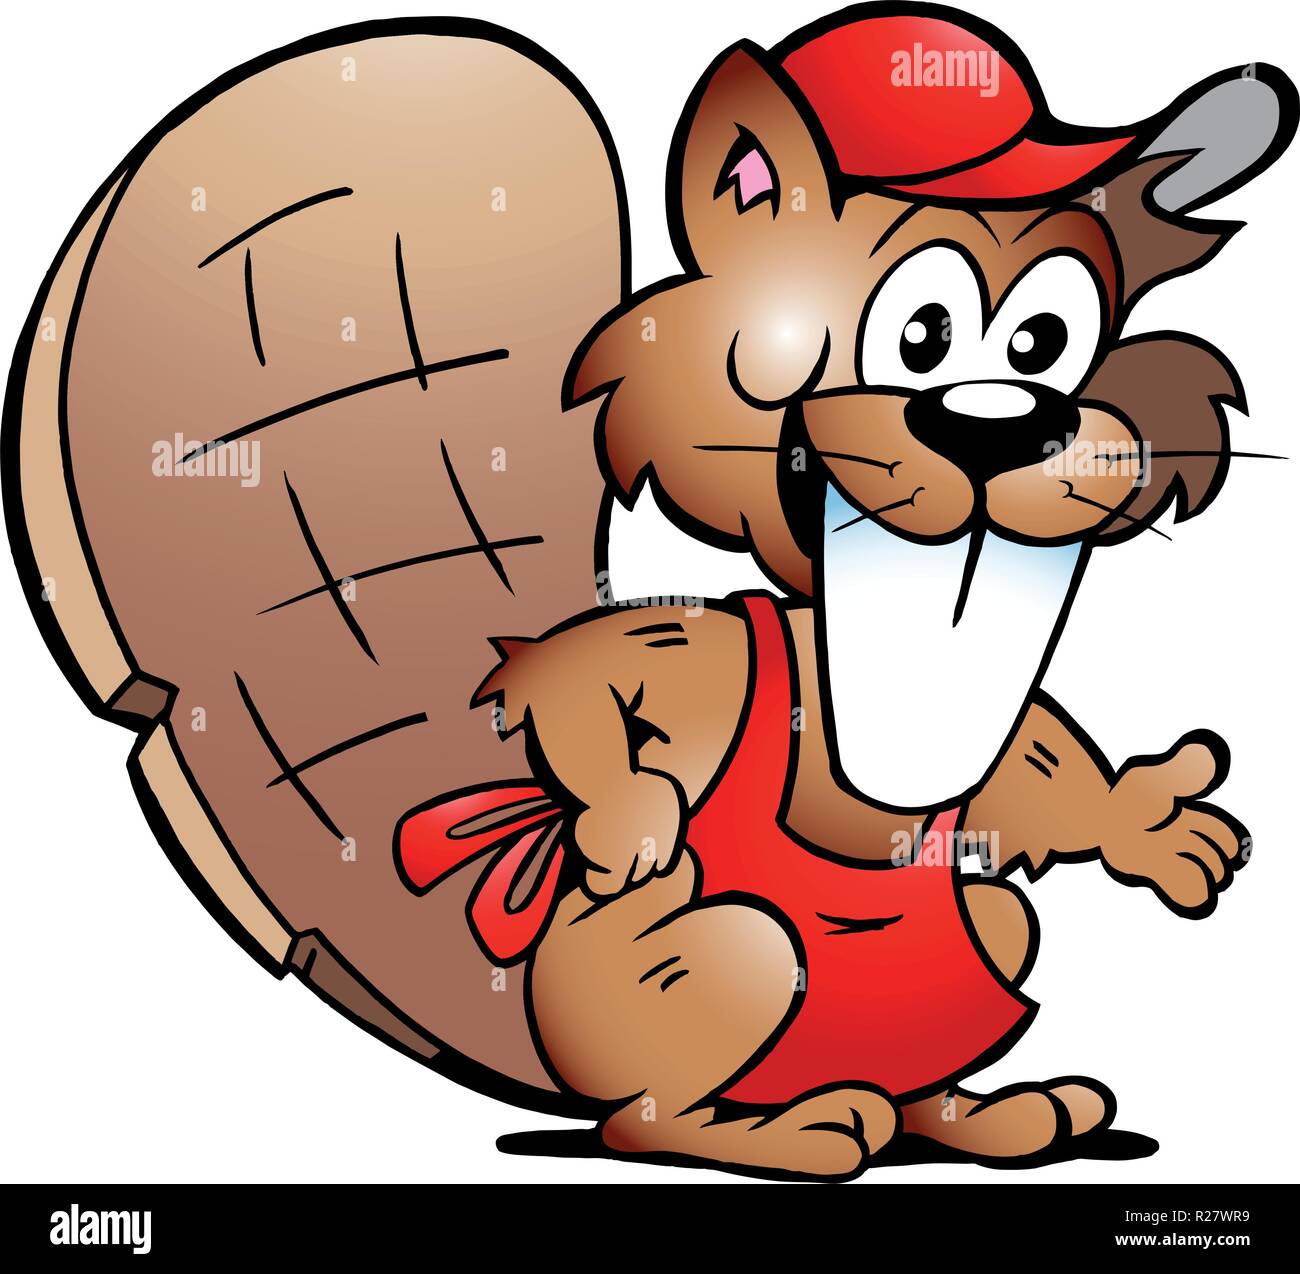 Disegnate a mano illustrazione vettoriale di un castoro che servono gli ospiti Illustrazione Vettoriale